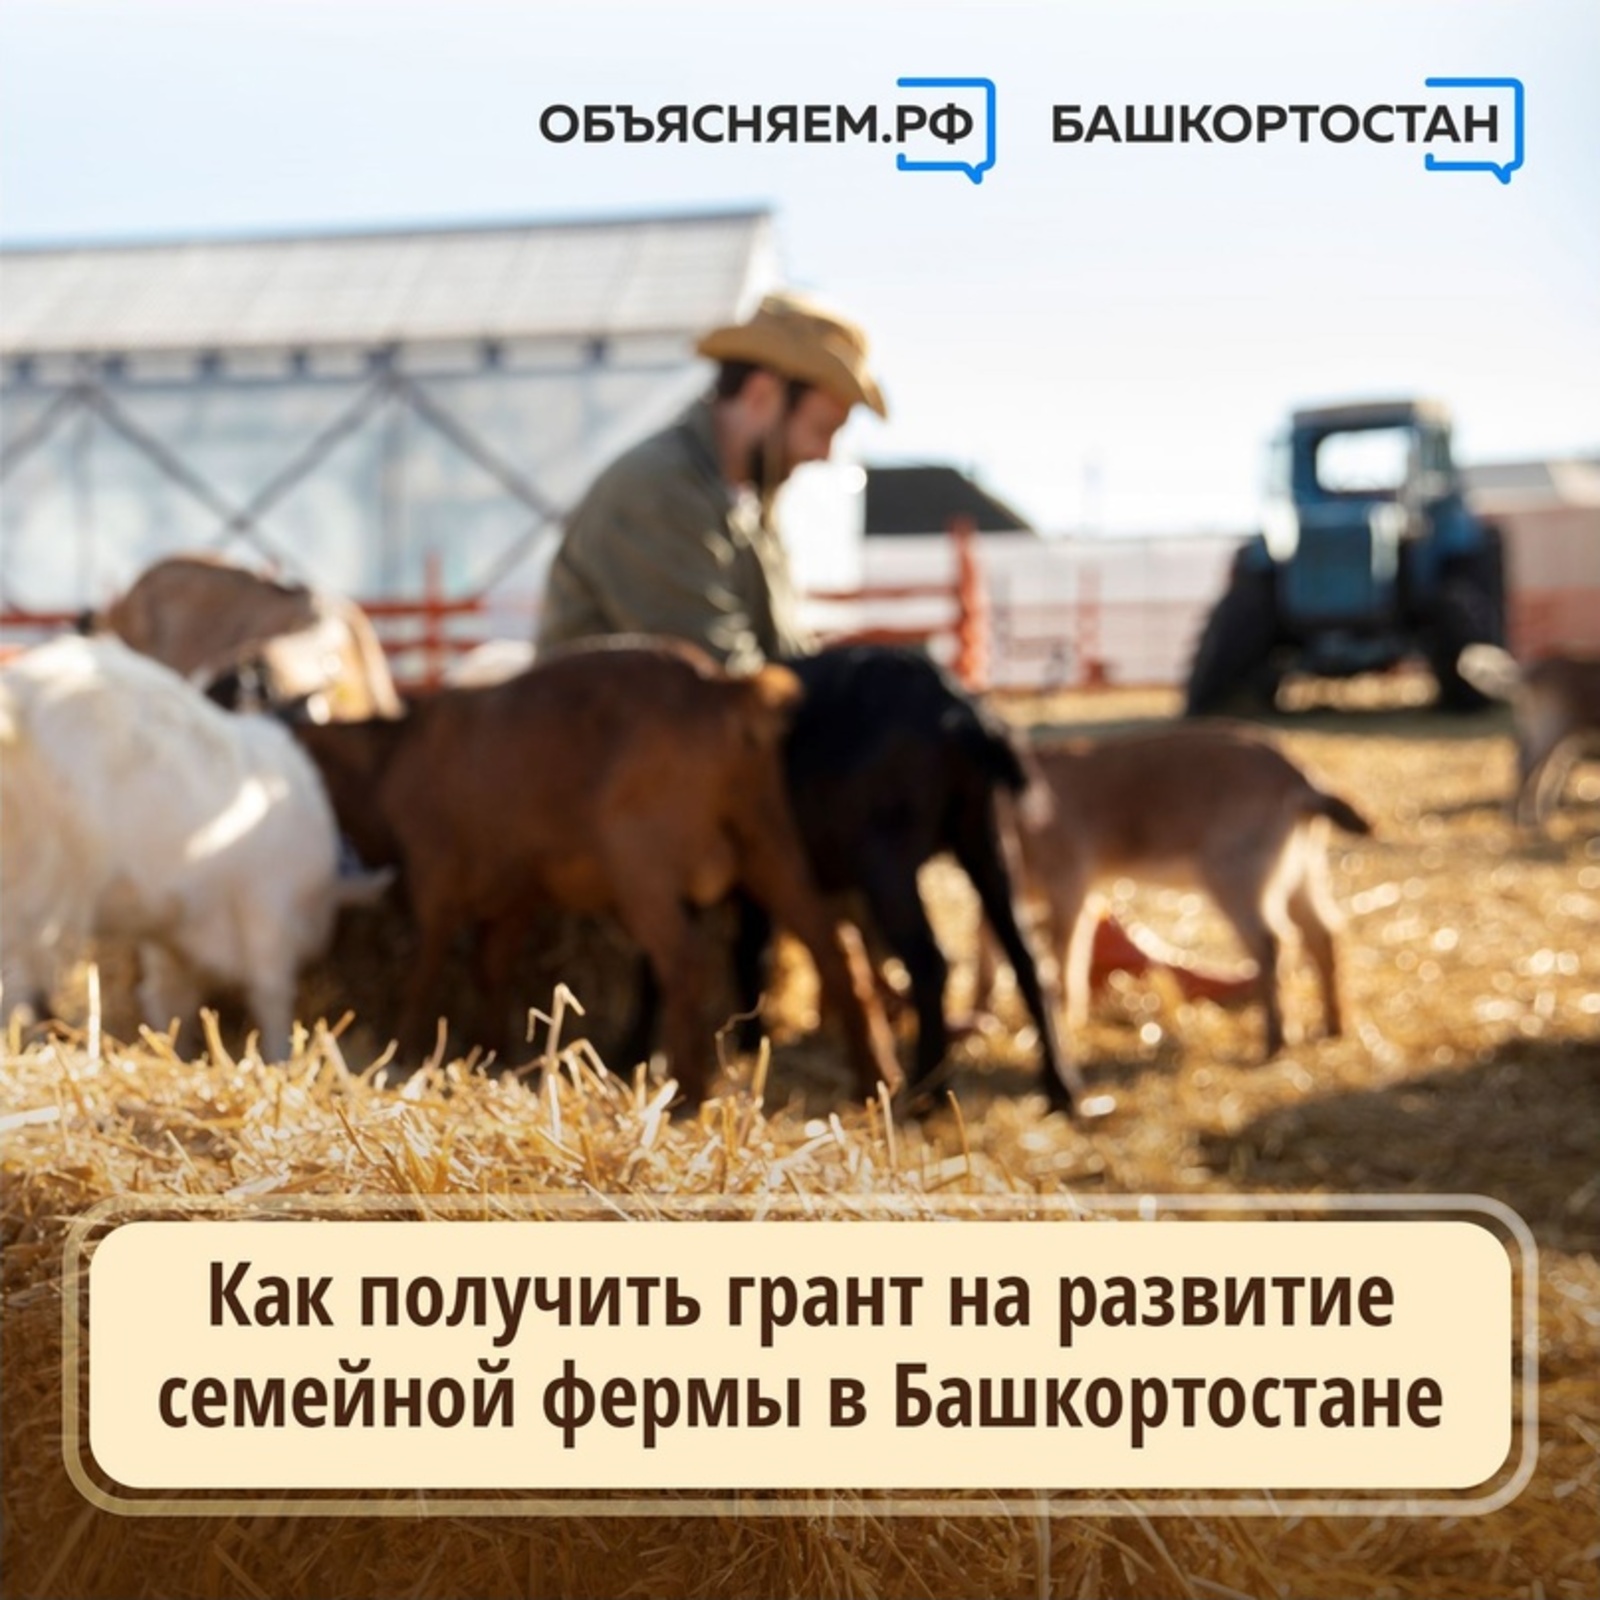 Крестьянские (фермерские) хозяйства Башкирии могут получить грант на развитие семейной фермы